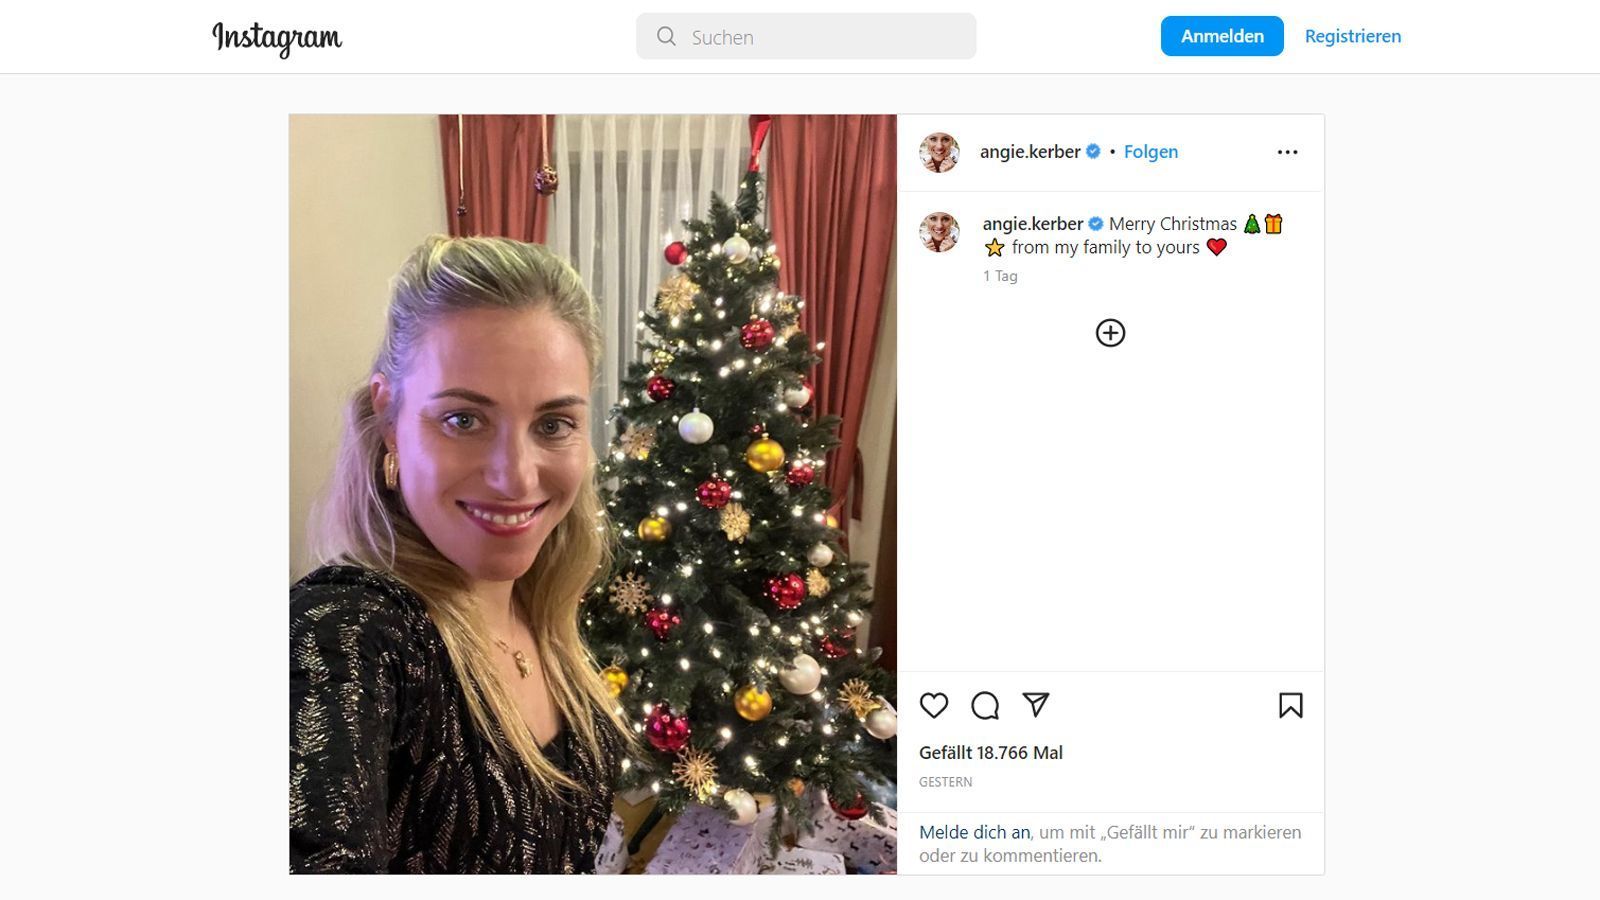 
                <strong>Angelique Kerber (ehem. deutsche Tennisspielerin) </strong><br>
                Für Angelique Kerber ist an Weihnachten entspannen angesagt: Bei "Instagram" grüßt die 34-Jährige ihre Fans hinter einem prächtig geschmückten Weihnachtsbaum mit den Worten: "Fröhliche Weihnachten von meiner Familie an eure!"
              